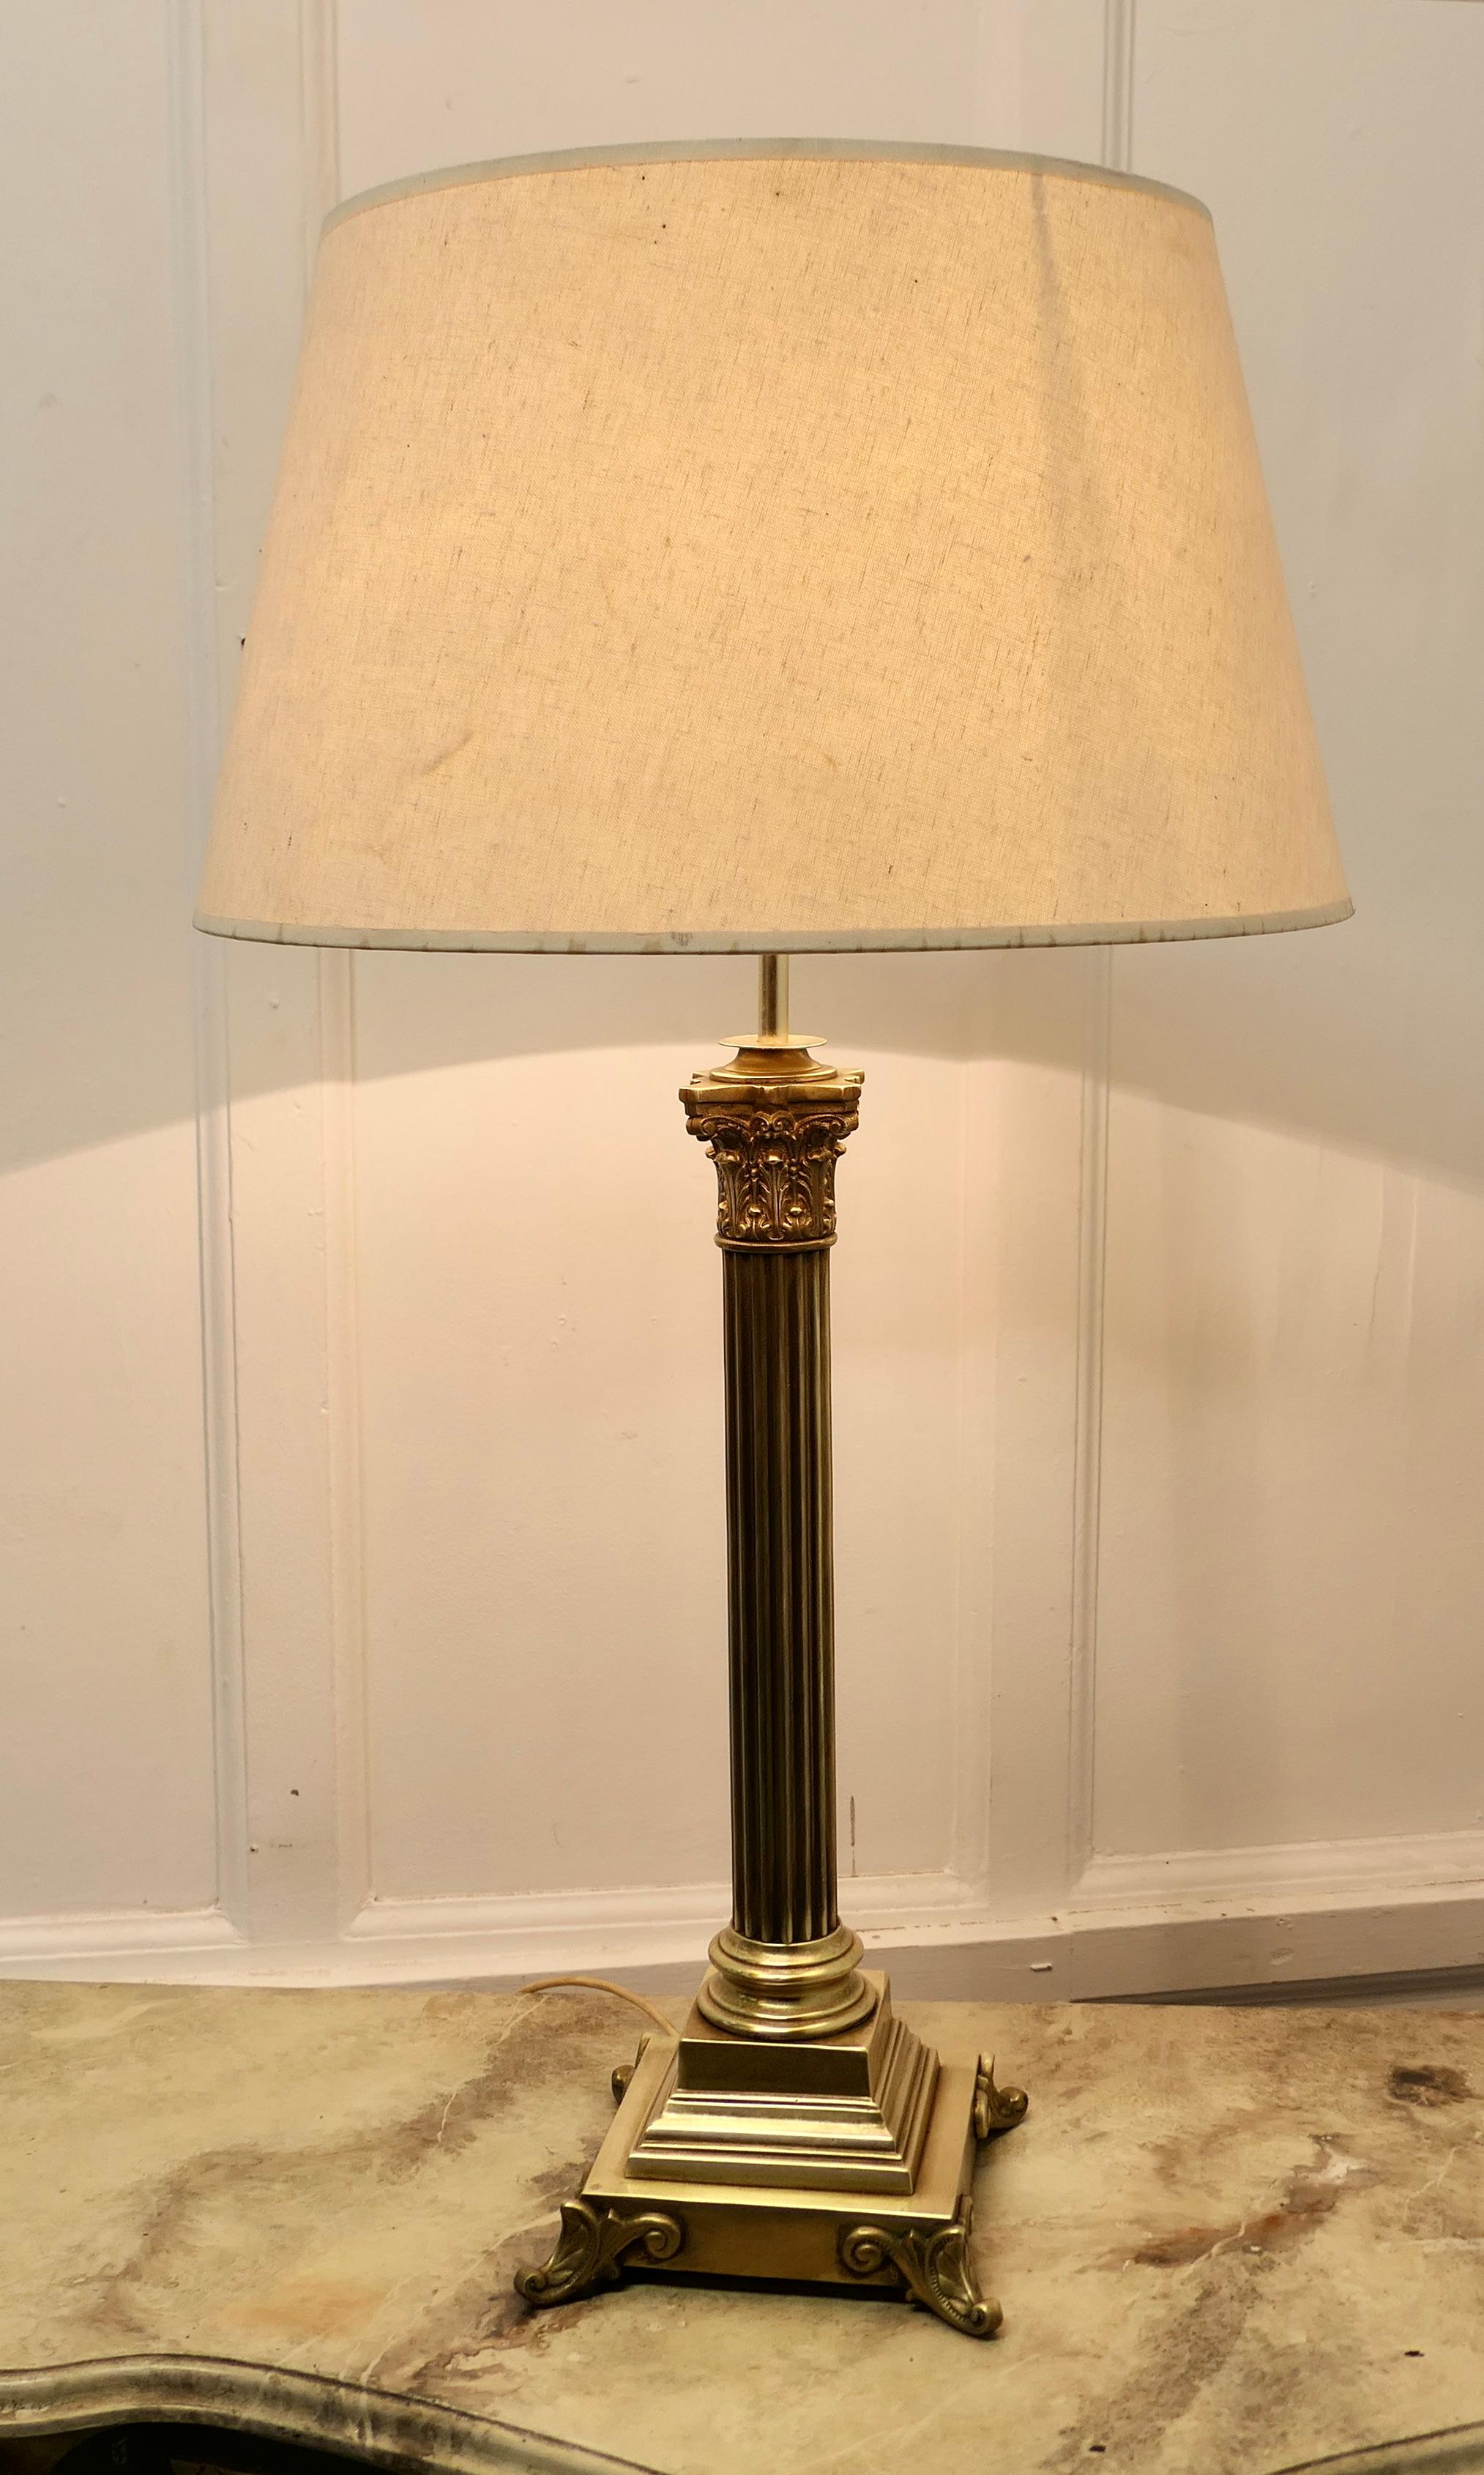 Lampe de table à colonne corinthienne en laiton avec abat-jour

Cette lampe est très attrayante. Elle possède une lourde colonne de style corinthien posée sur une base rectangulaire étagée. Elle est livrée avec un abat-jour en lin de couleur neutre,